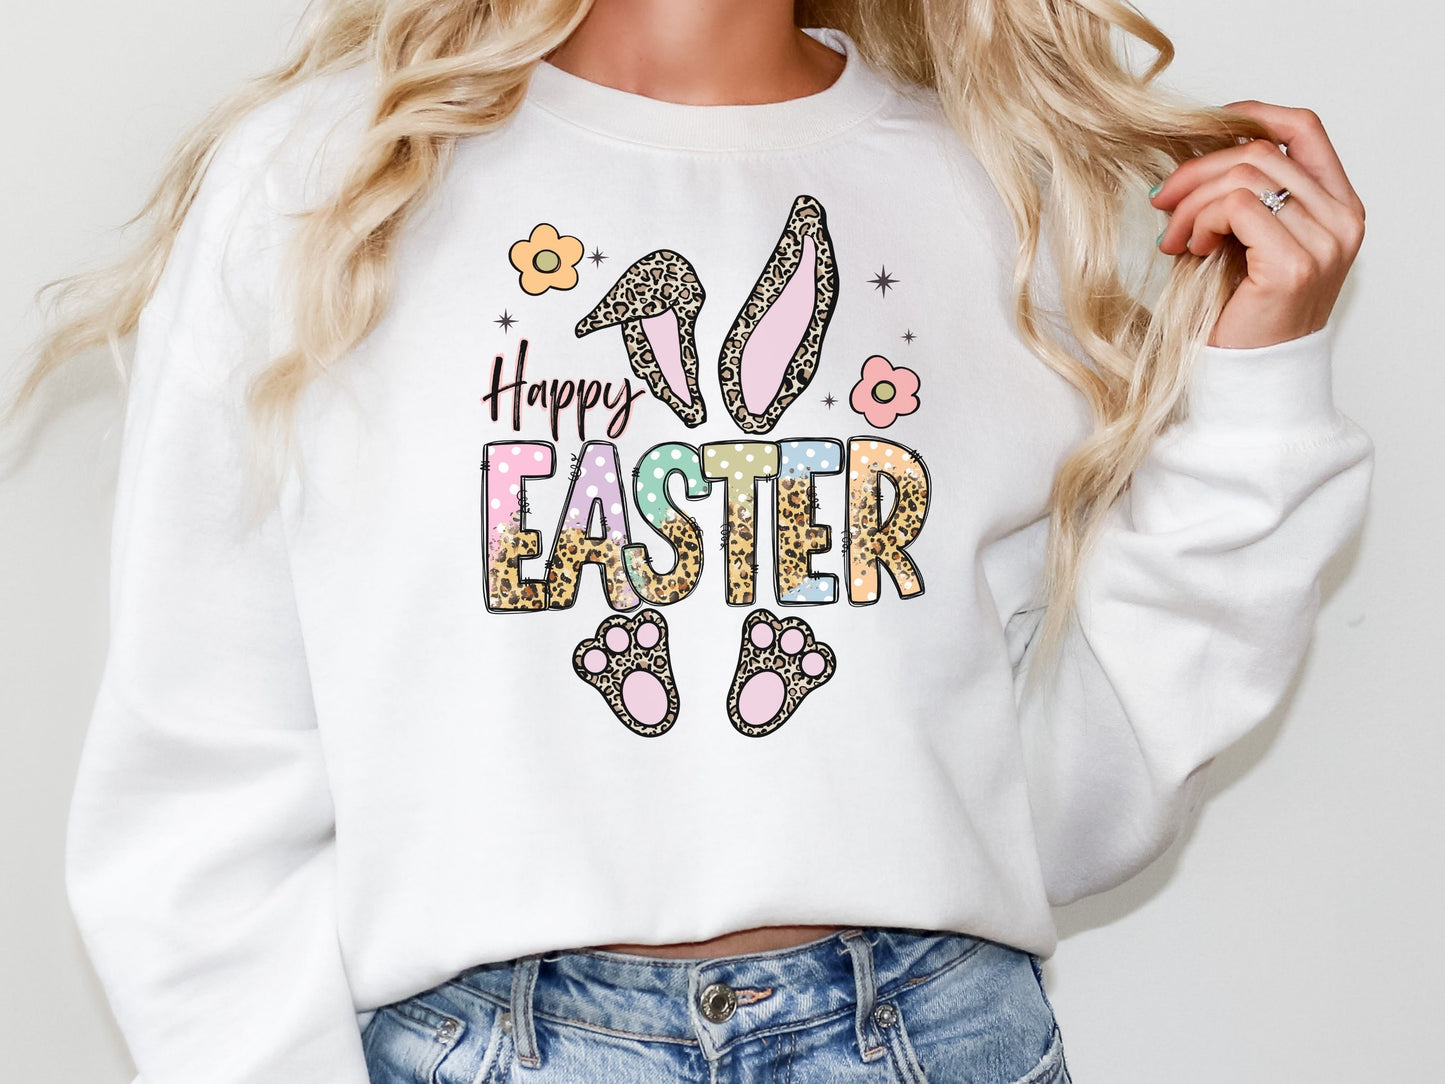 Happy Easter Women's Easter Sweatshirt